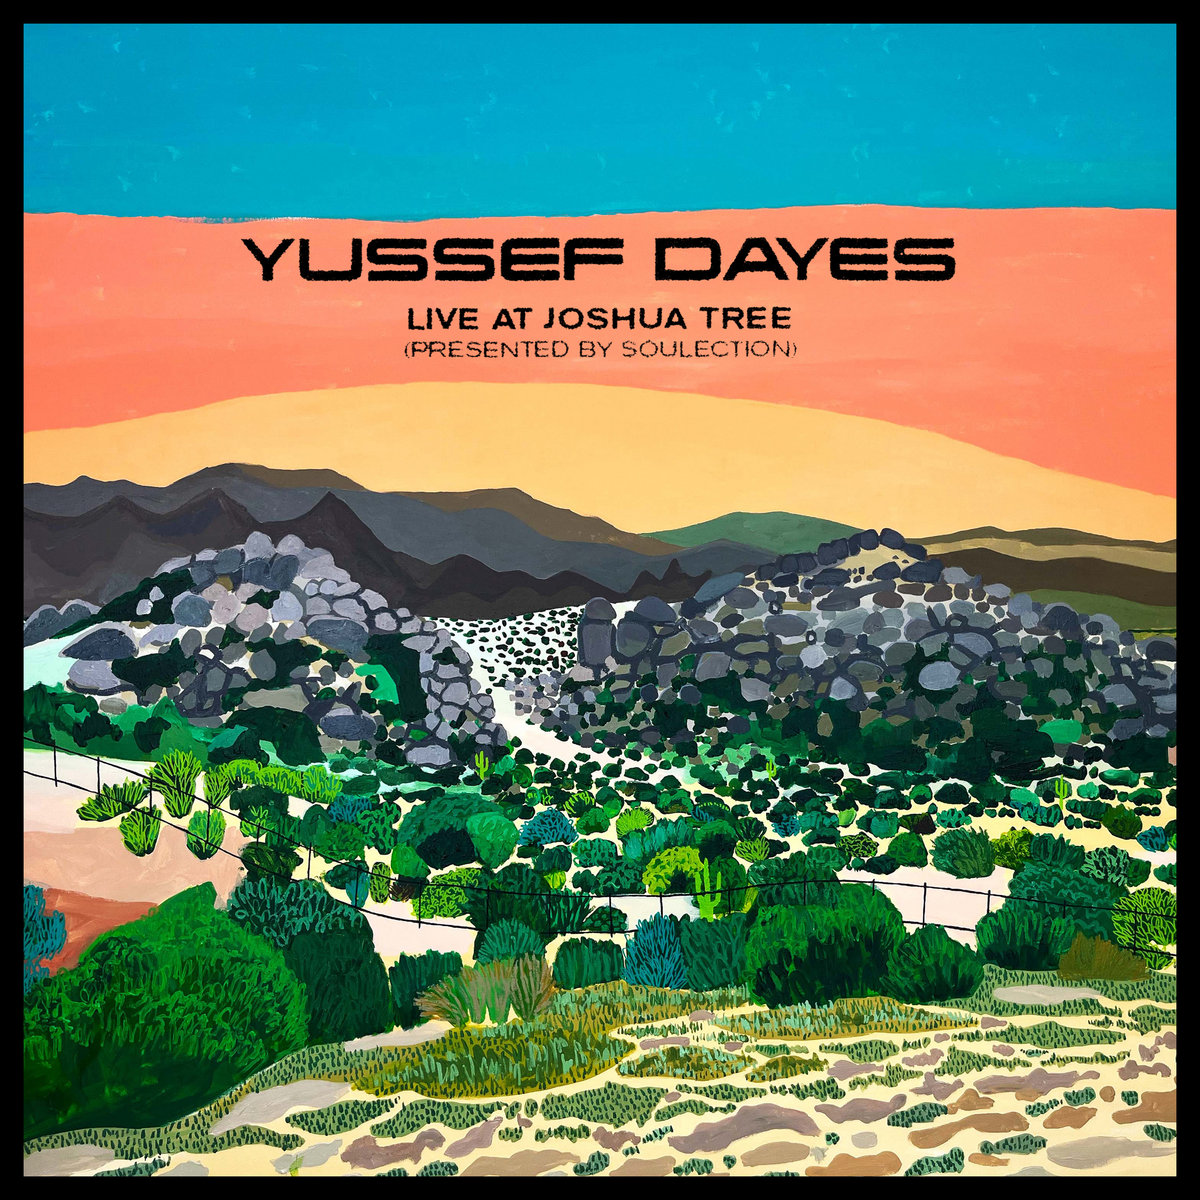 YUSSEF DAYES EXPERIENCE - LIVE AT JOSHUA TREE VINYL 33 TOURS DISQUE VINYLE LP PARIS MONTPELLIER GROUND ZERO PLATINE PRO-JECT ALBUM TOURNE-DISQUE MUSICAL FIDELITY KANTU YU BRINGHS ORTOFON 45 TOURS SINGLES ALBUM ACHETER UNE PLATINE VINYLS BOUTIQUE PHYSIQUE DISQUAIRE MAGASIN CENTRE VILLE INDES INDIE RECORD STORE INDEPENDENT INDEPENDANT